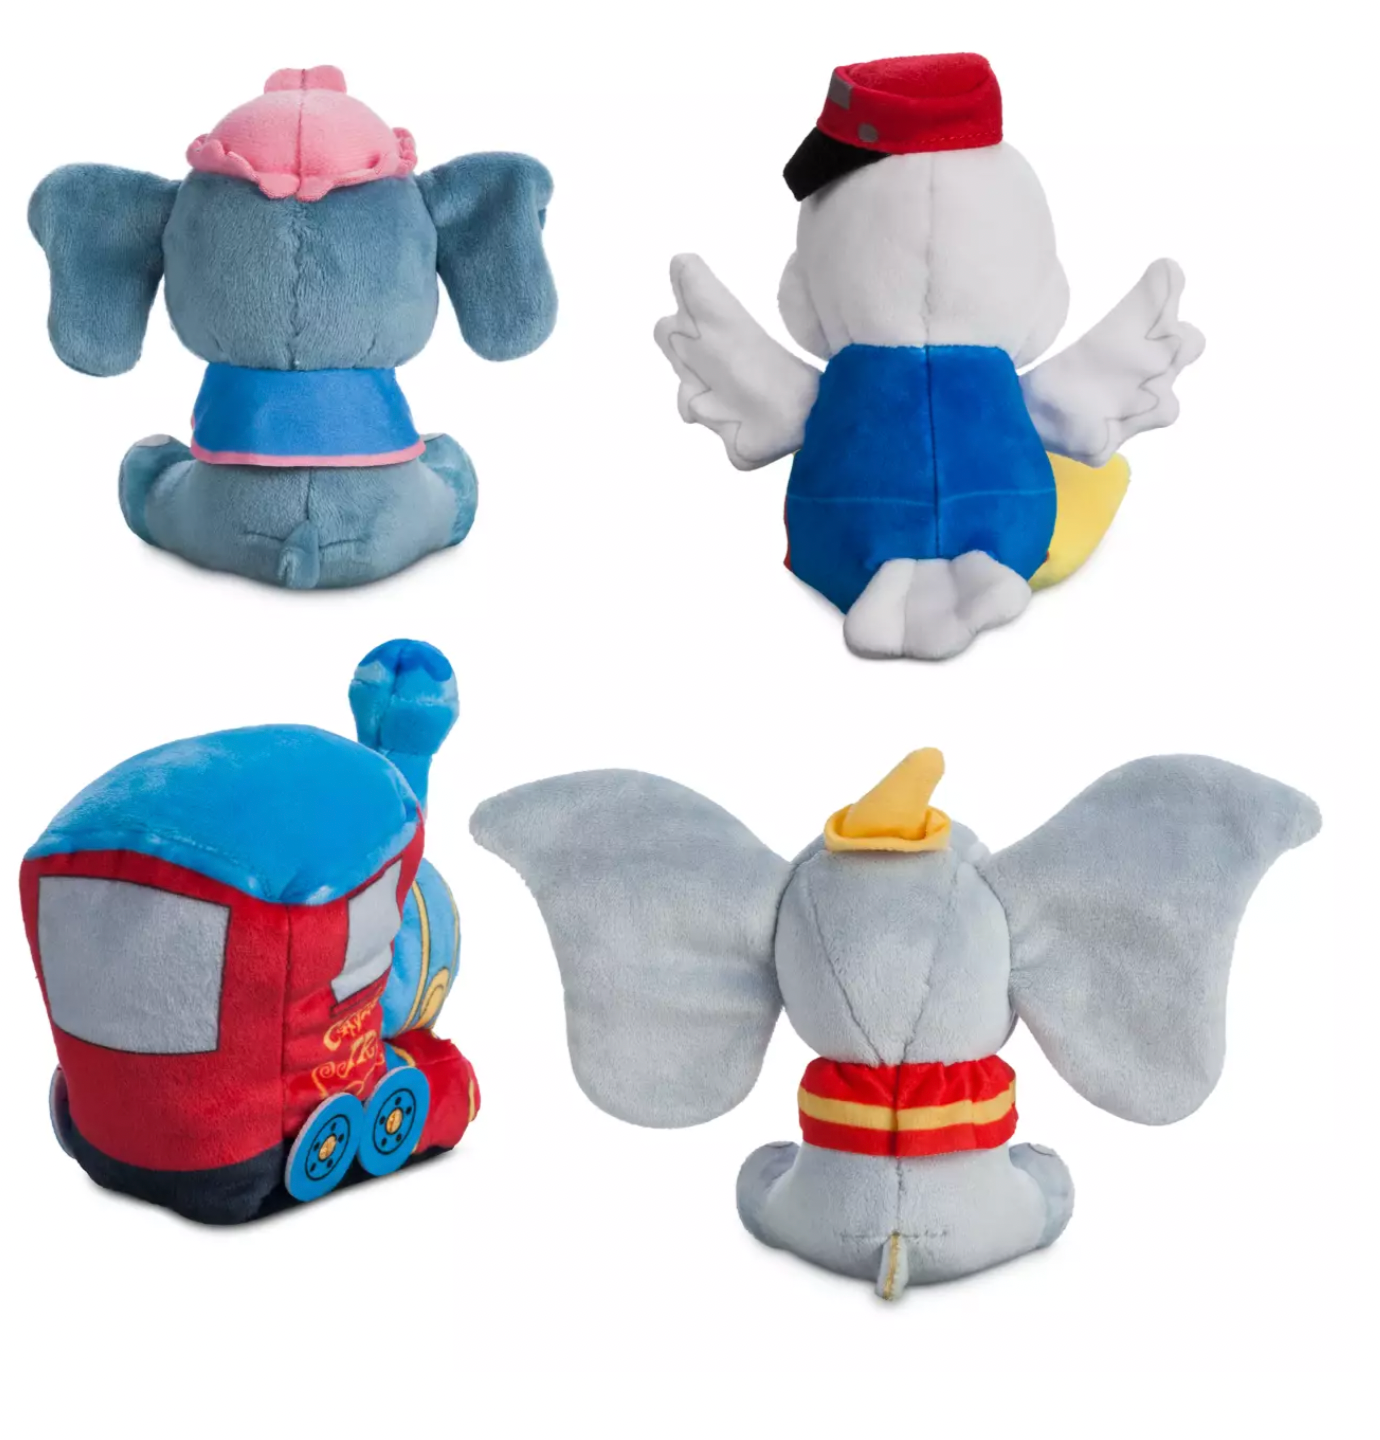 Disney Parks Dumbo the Flying Elephant Mystery Wishables Plush New Sealed